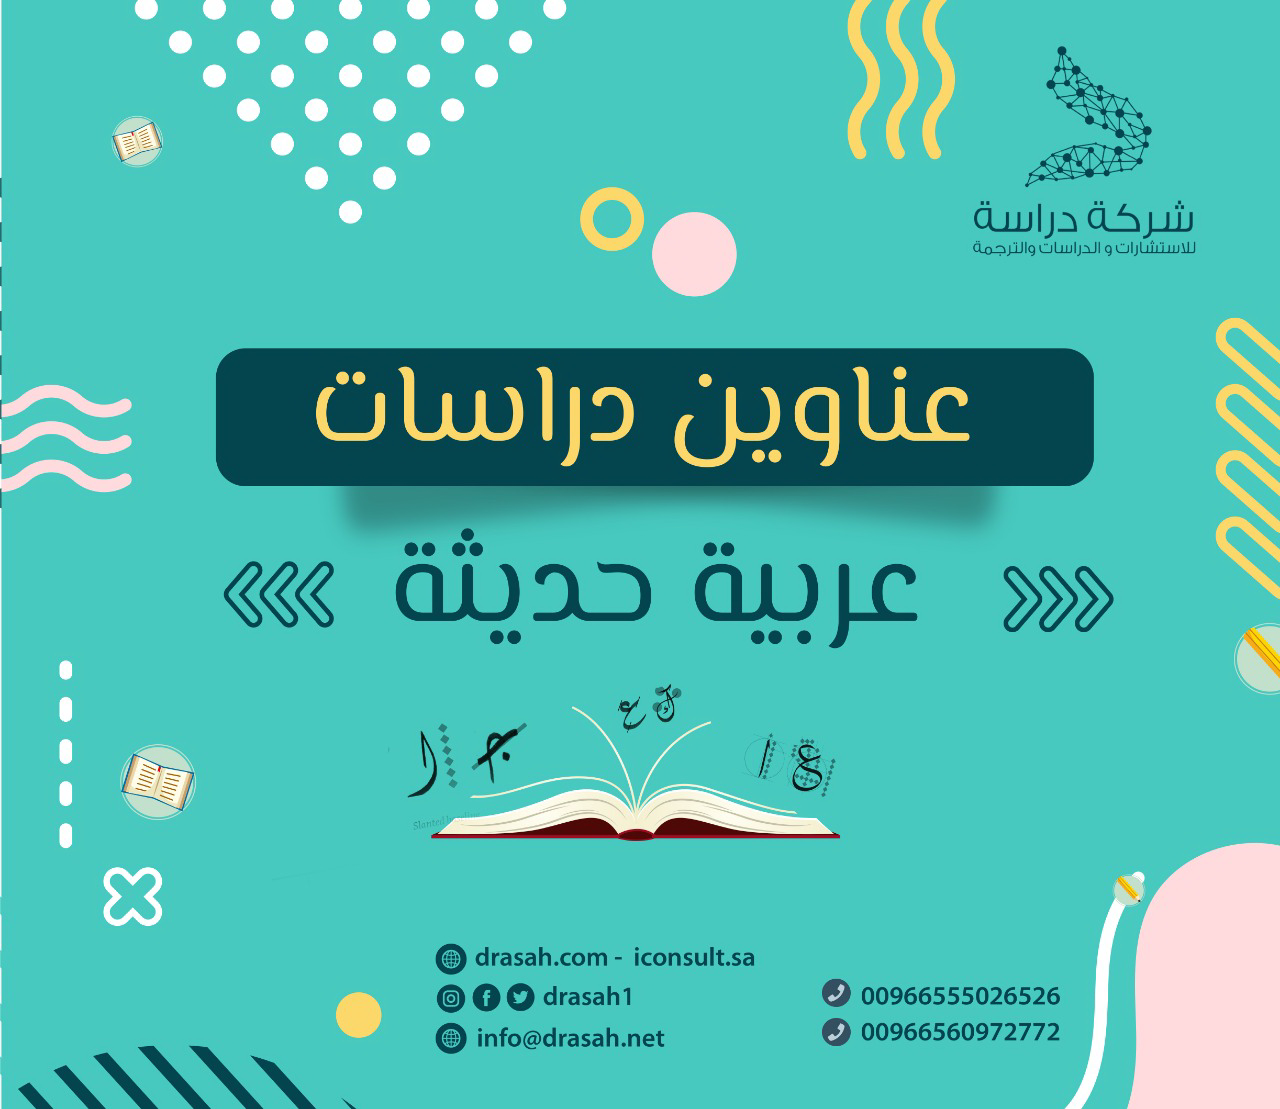 عناوين دراسات سابقة عربية حول الذكاء اللغوي والمدخل الدرامي